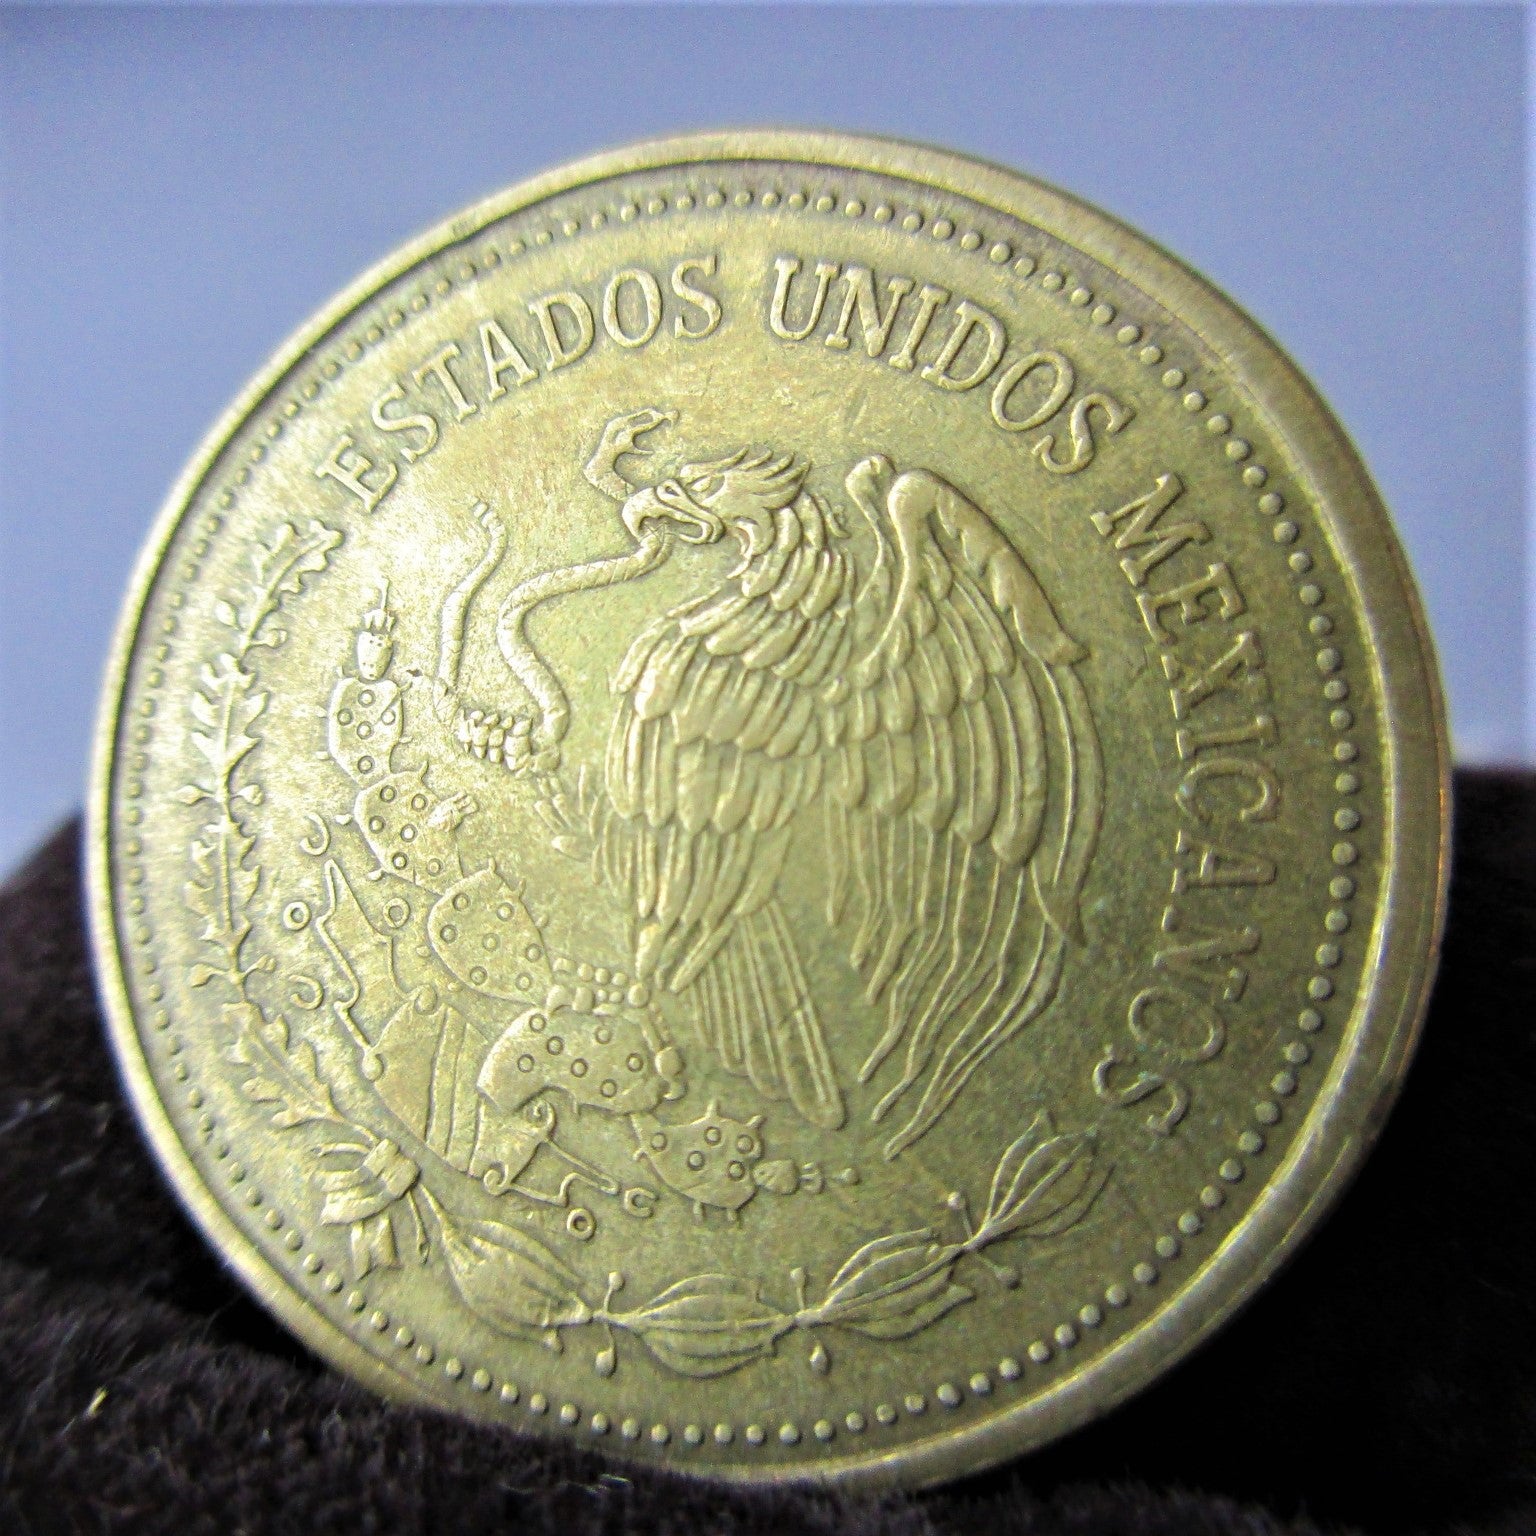 Mexican Golden Eagle 100 Pesos Coin Vintage c1984